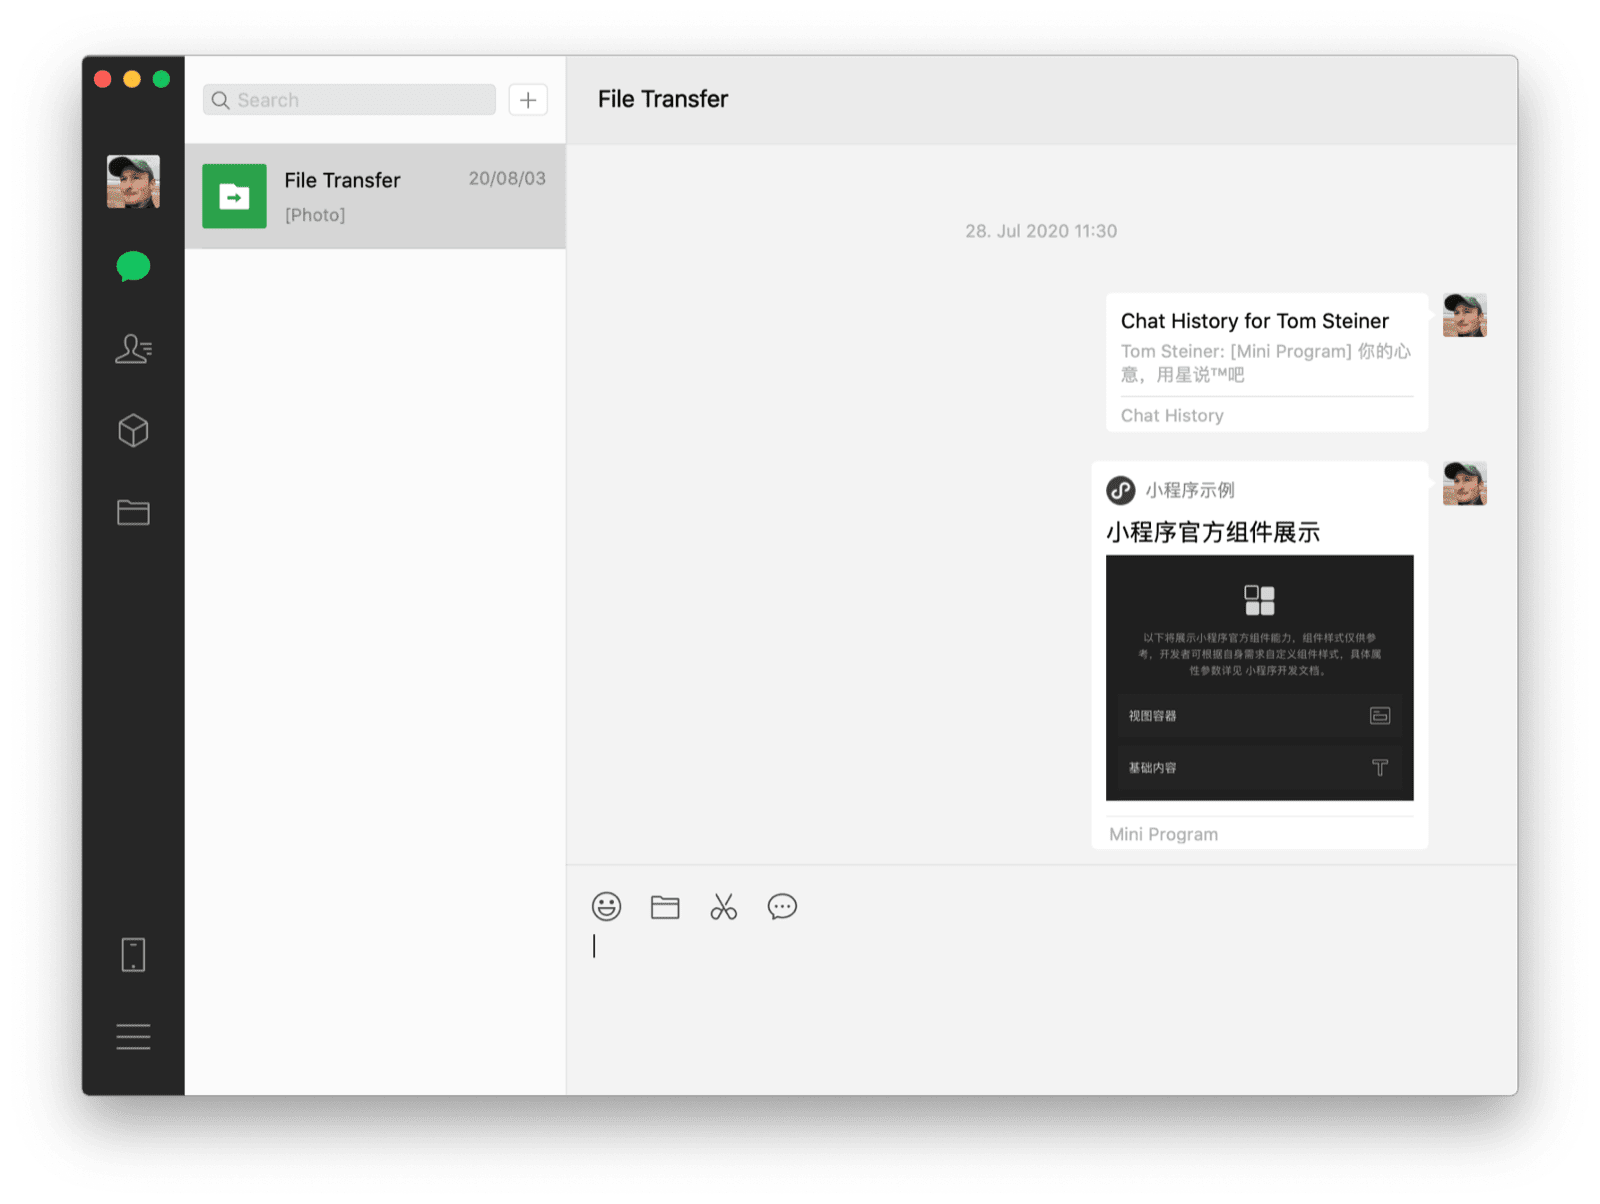 سرویس گیرنده دسکتاپ وی چت macOS که چت با خود را با یک برنامه کوچک مشترک و سابقه چت به عنوان دو پیام قابل مشاهده نشان می دهد.